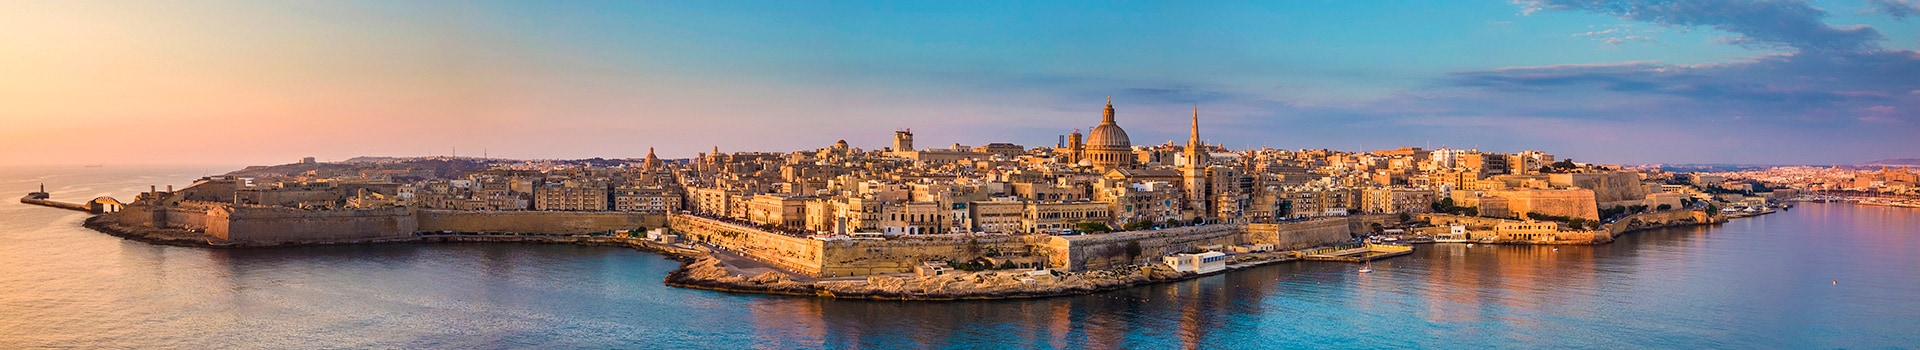 San Sebastián - Malta